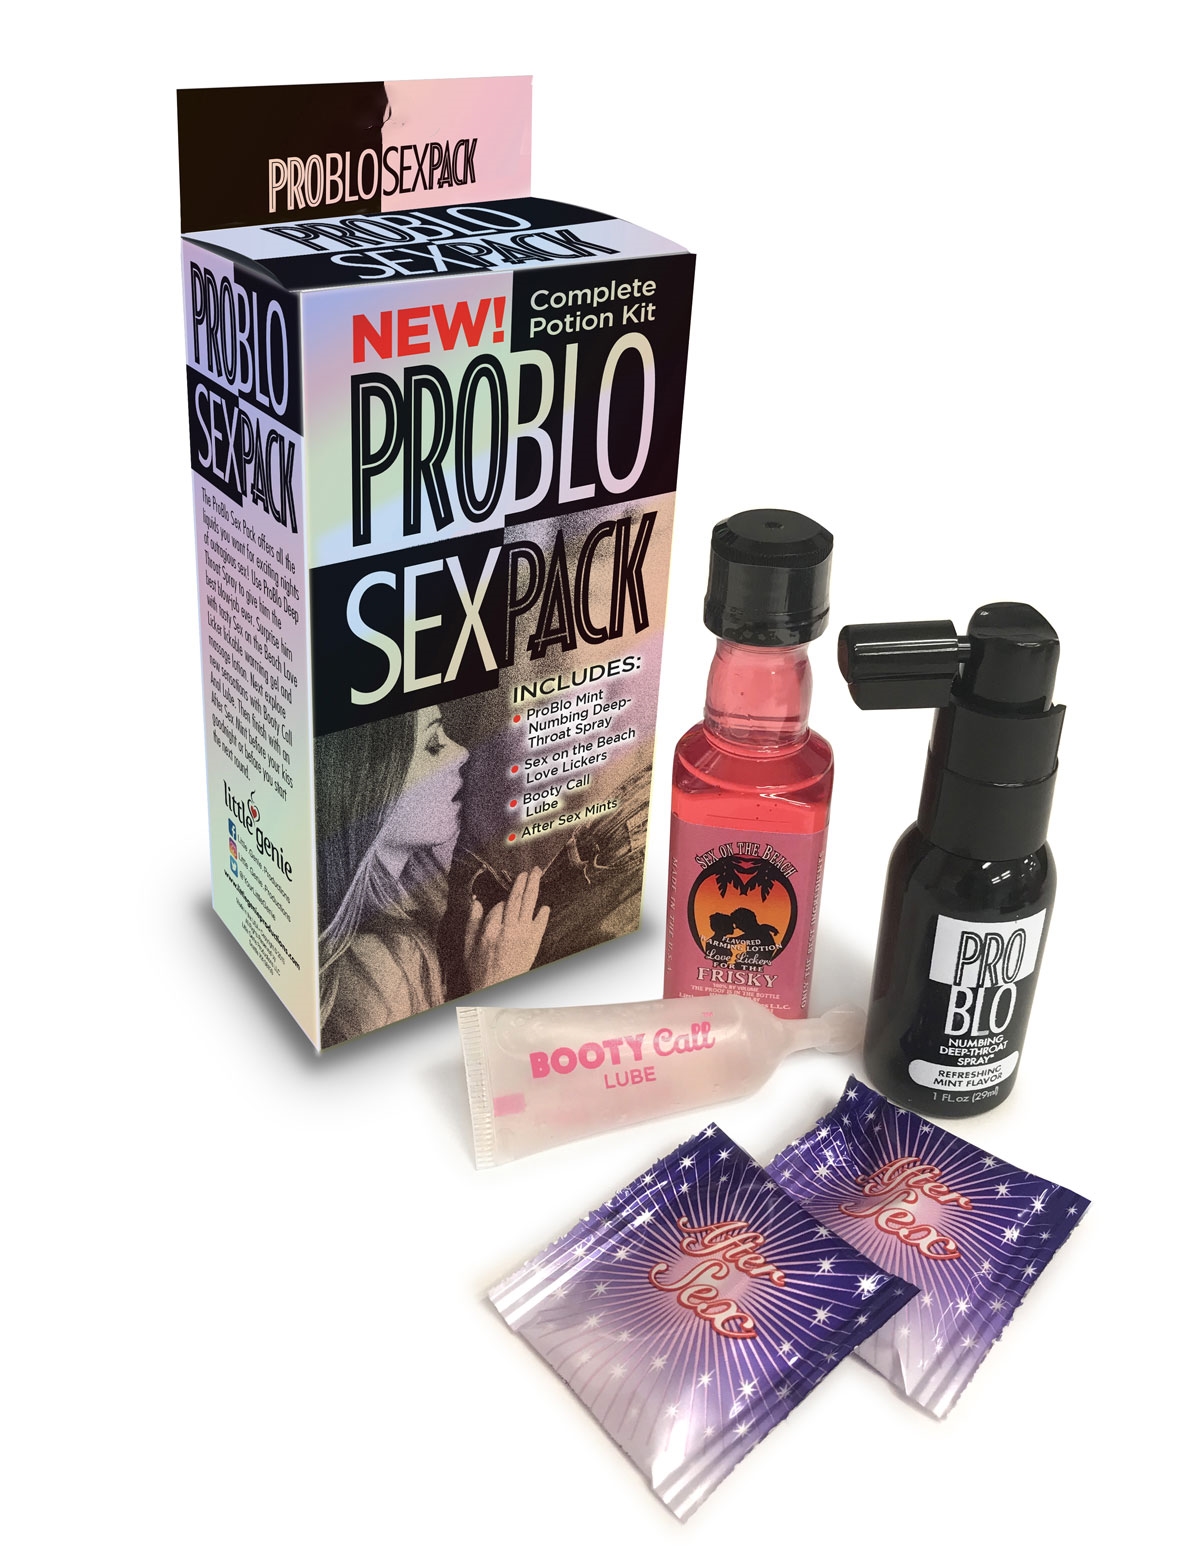 Problo Sex Pack Bt 505 03057 Lover S Lane